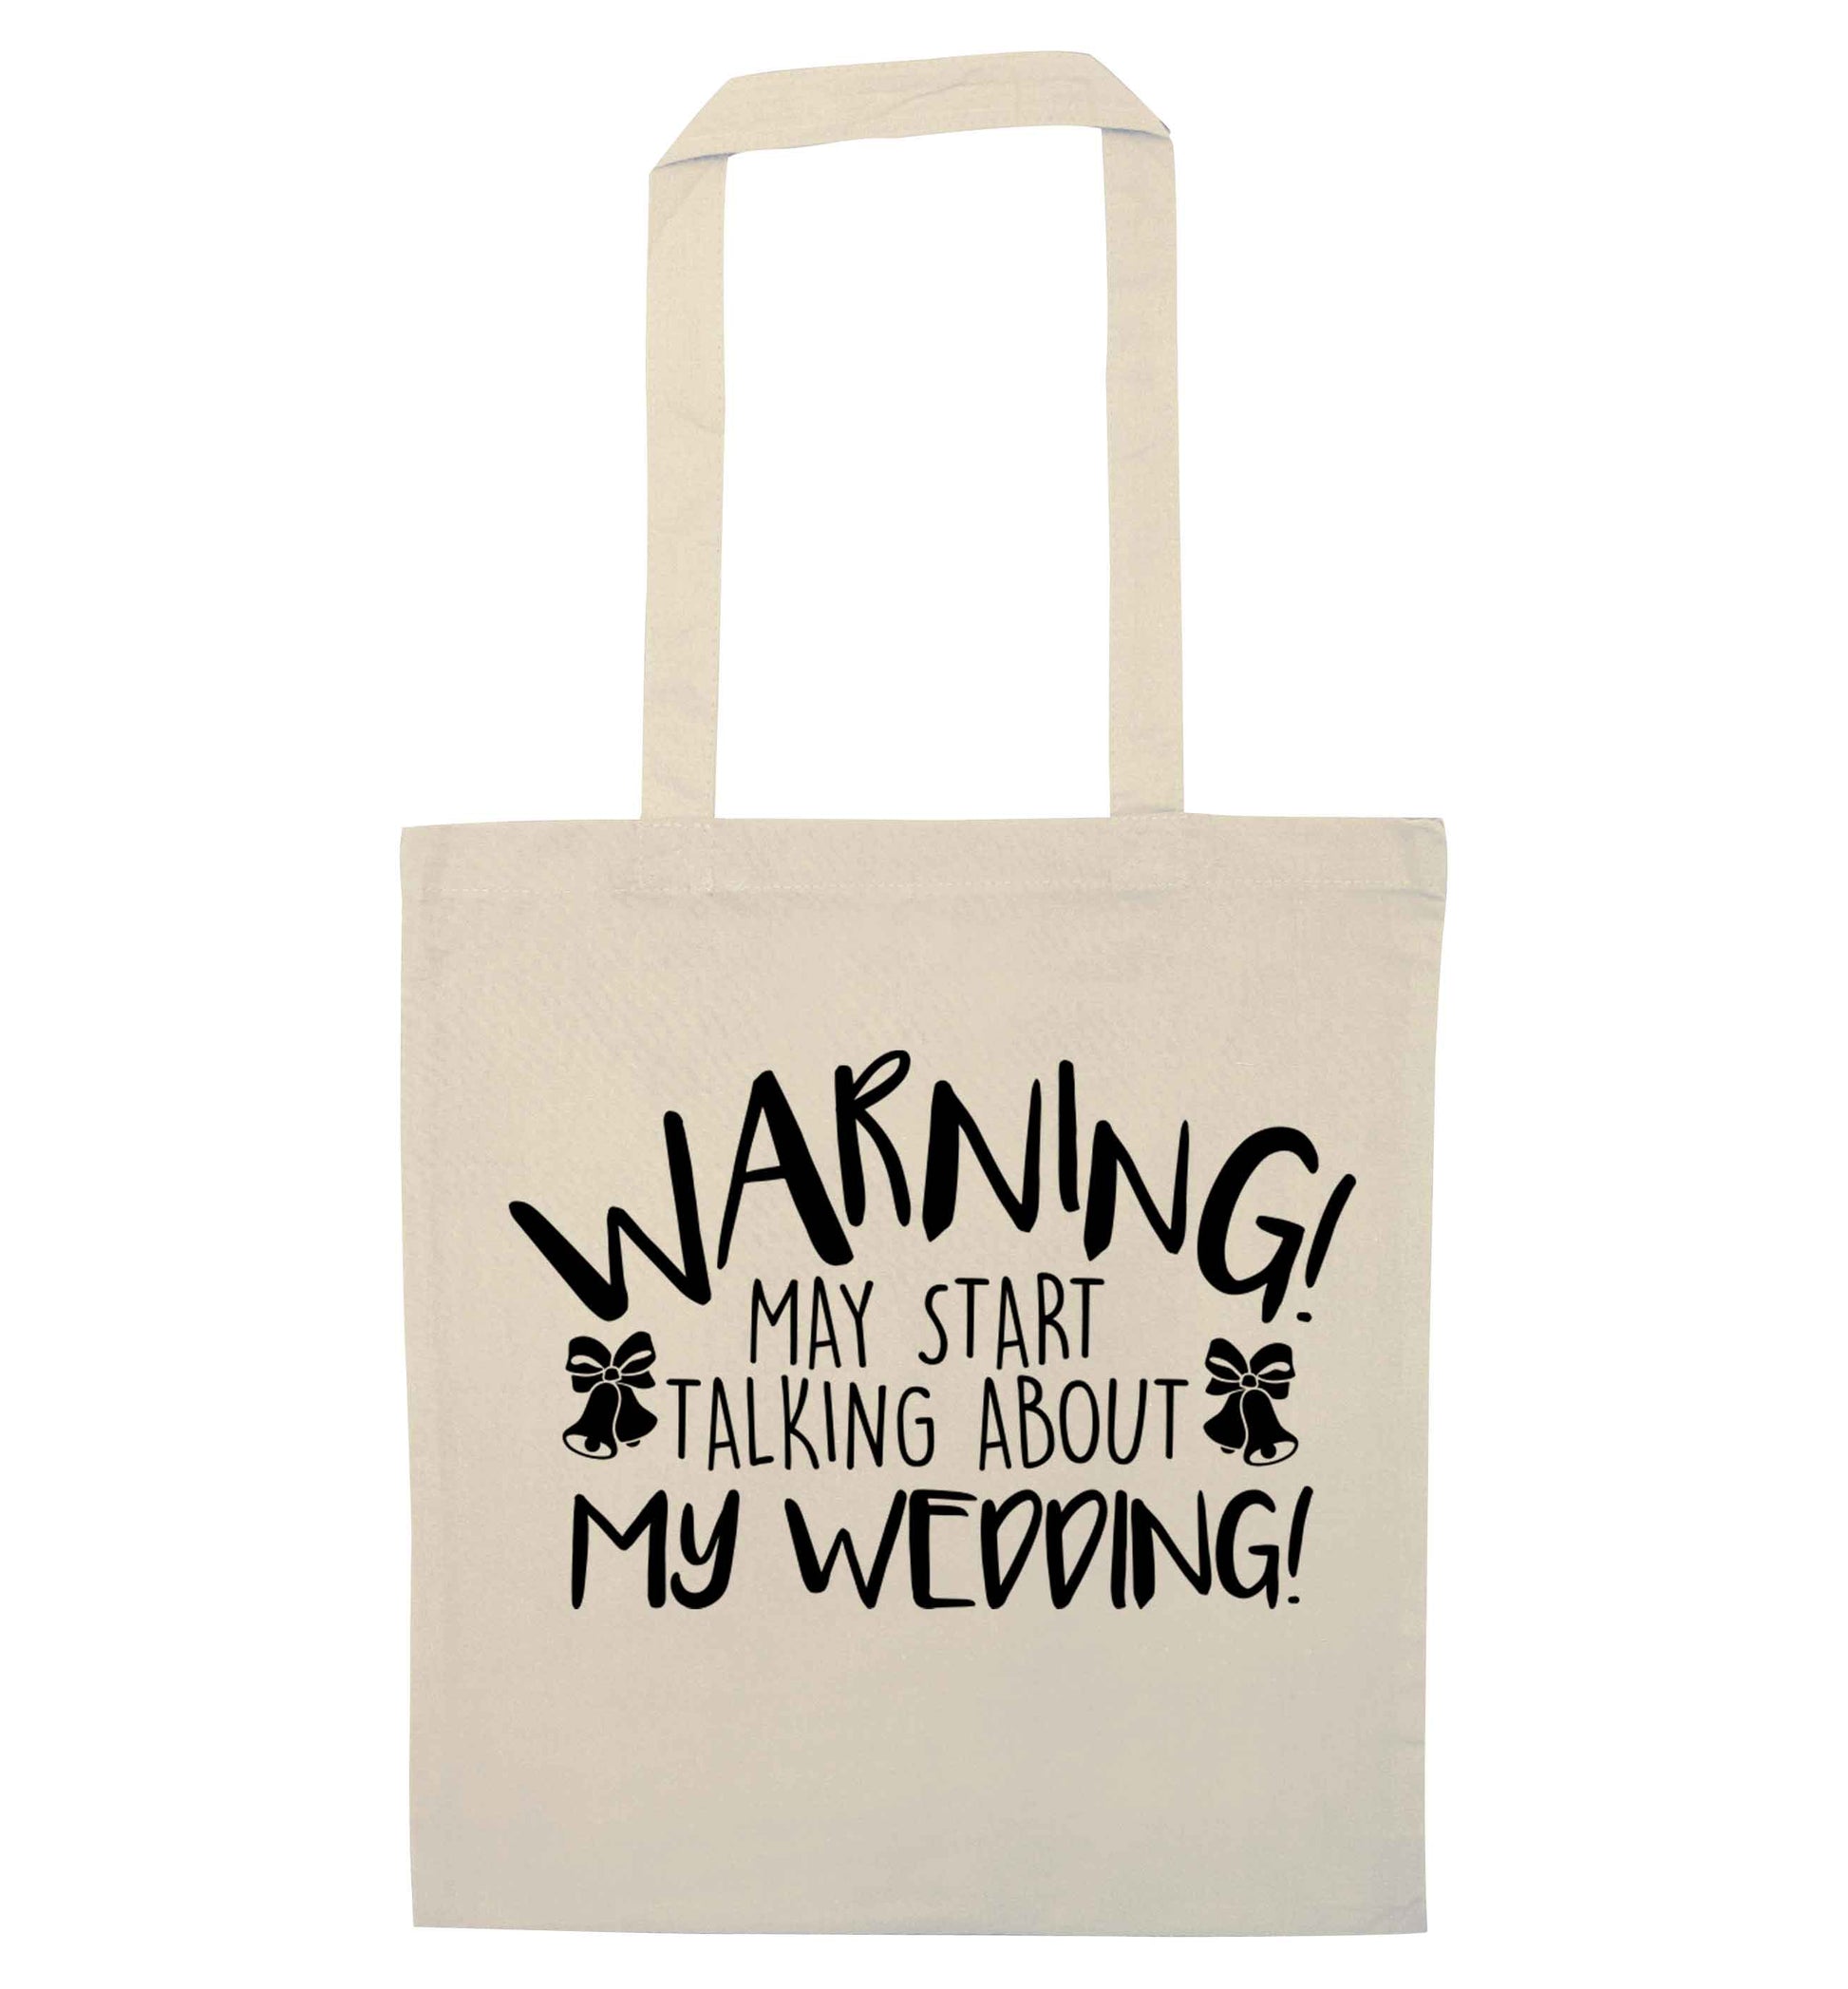 Warning may start talking about my wedding! natural tote bag